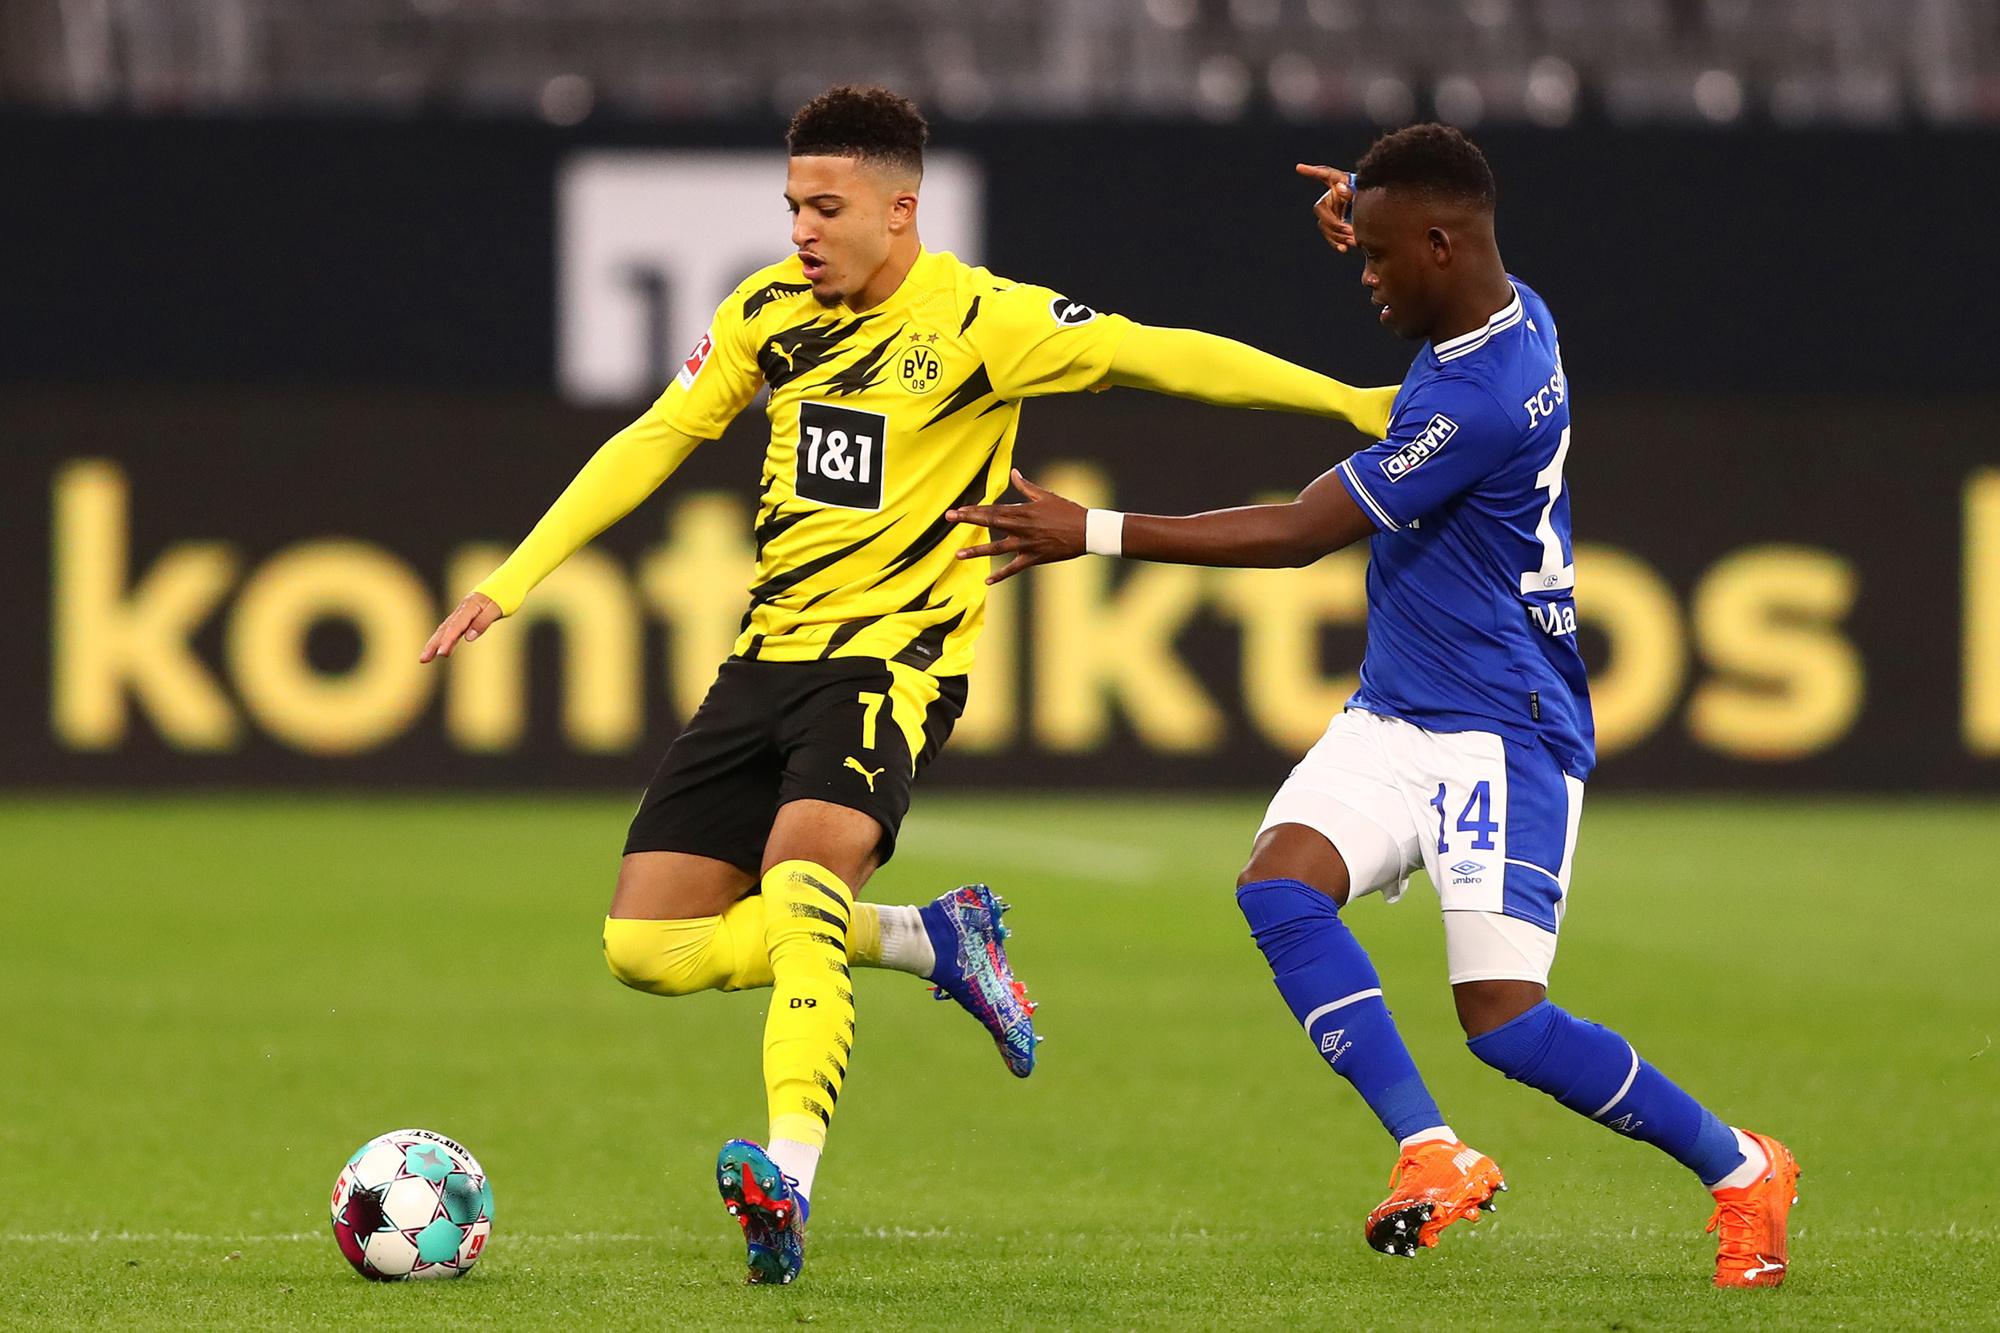 Matondo in actie voor Schalke 04 tegen Jadon Sancho (Dortmund).